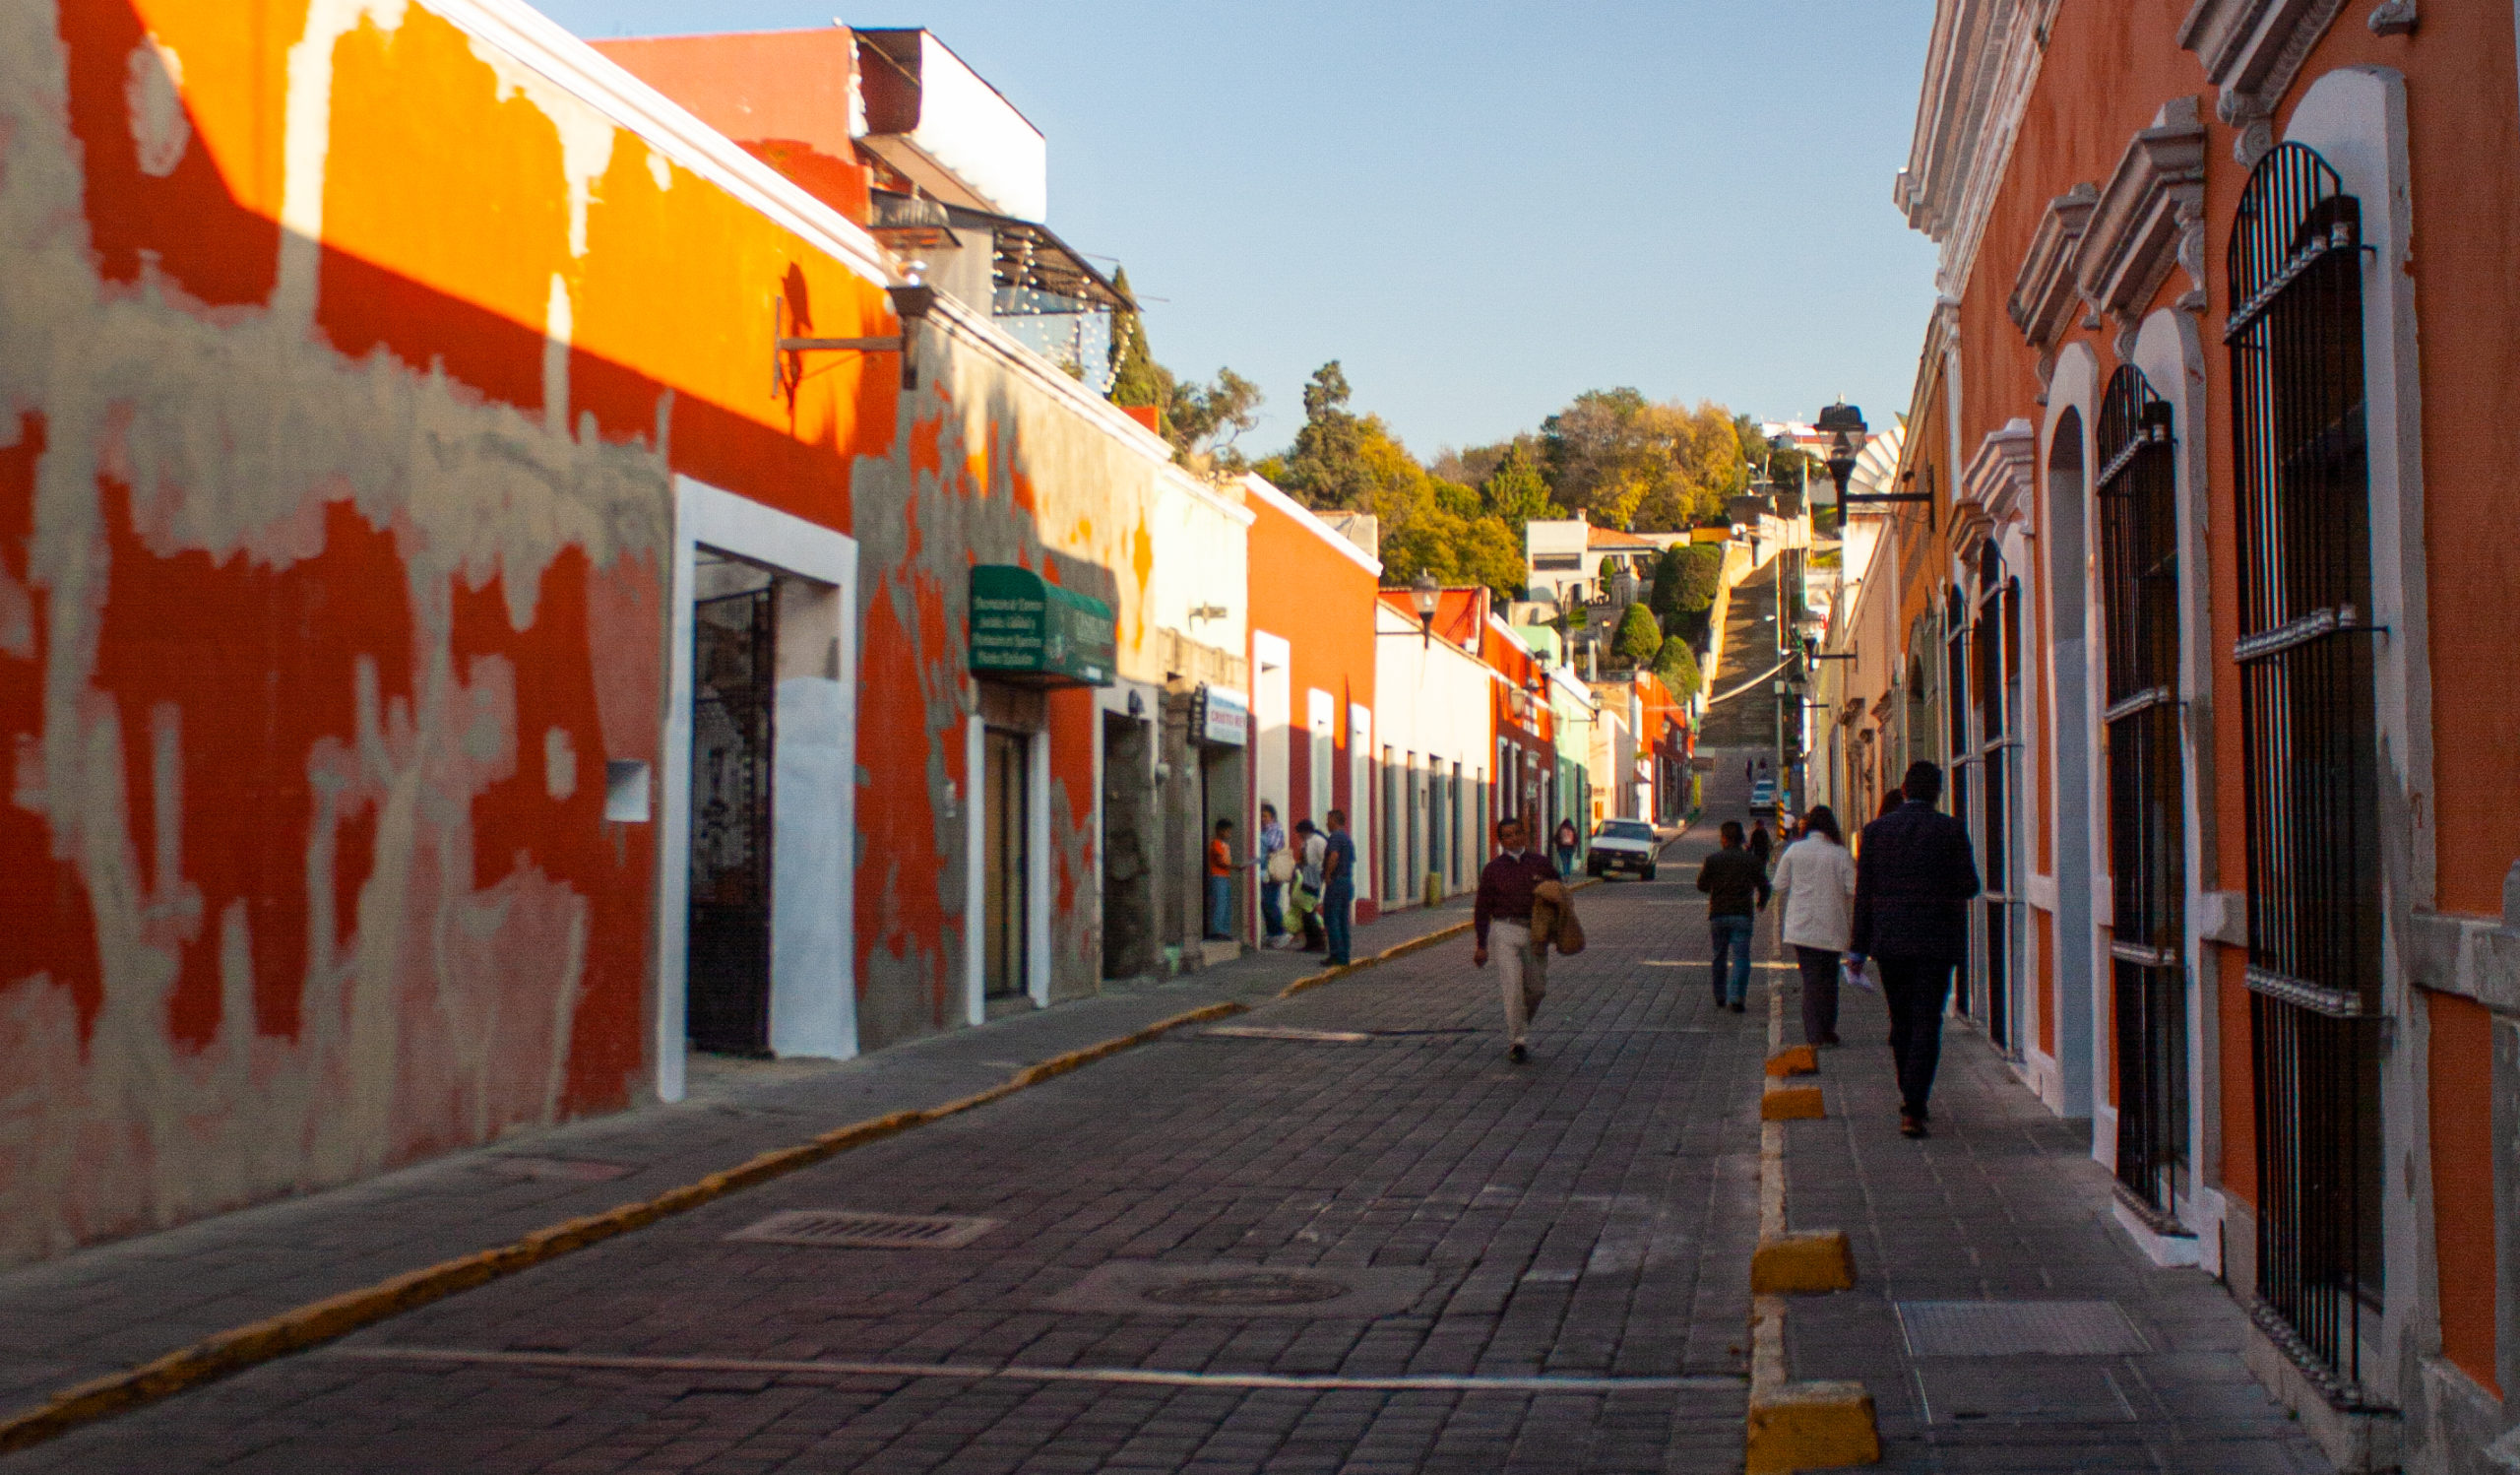 Las calles por la tarde Centro histórico de Tlaxcala, Tlaxcala, México